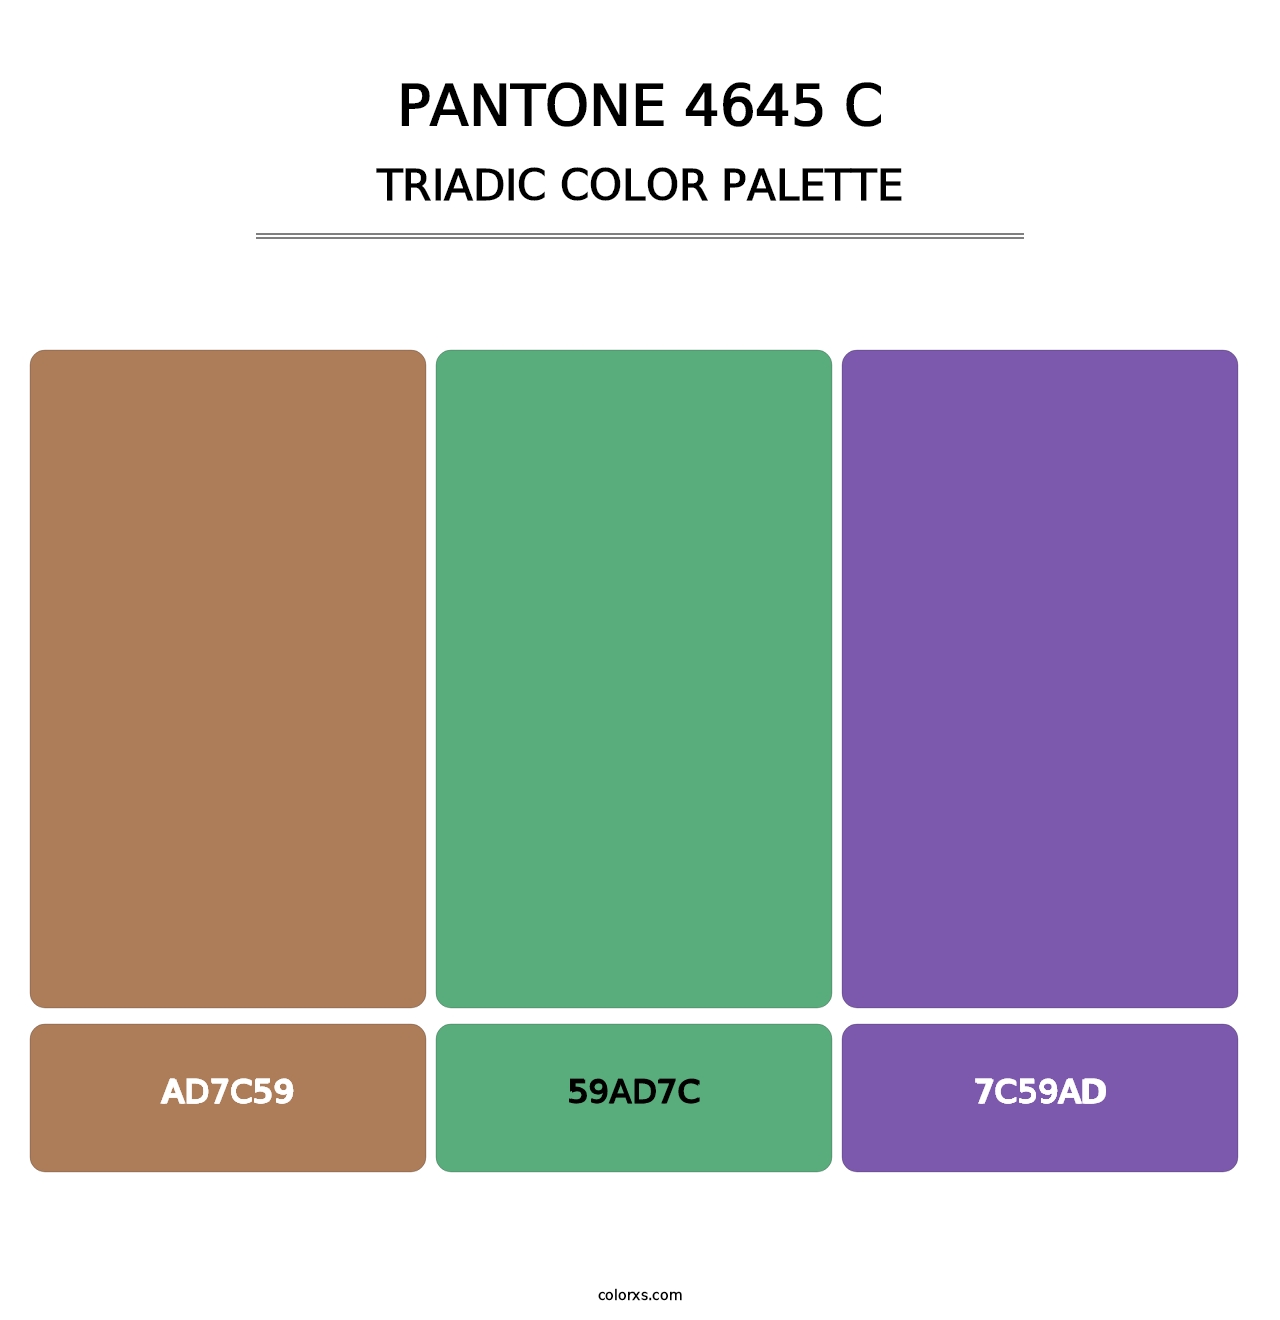 PANTONE 4645 C - Triadic Color Palette